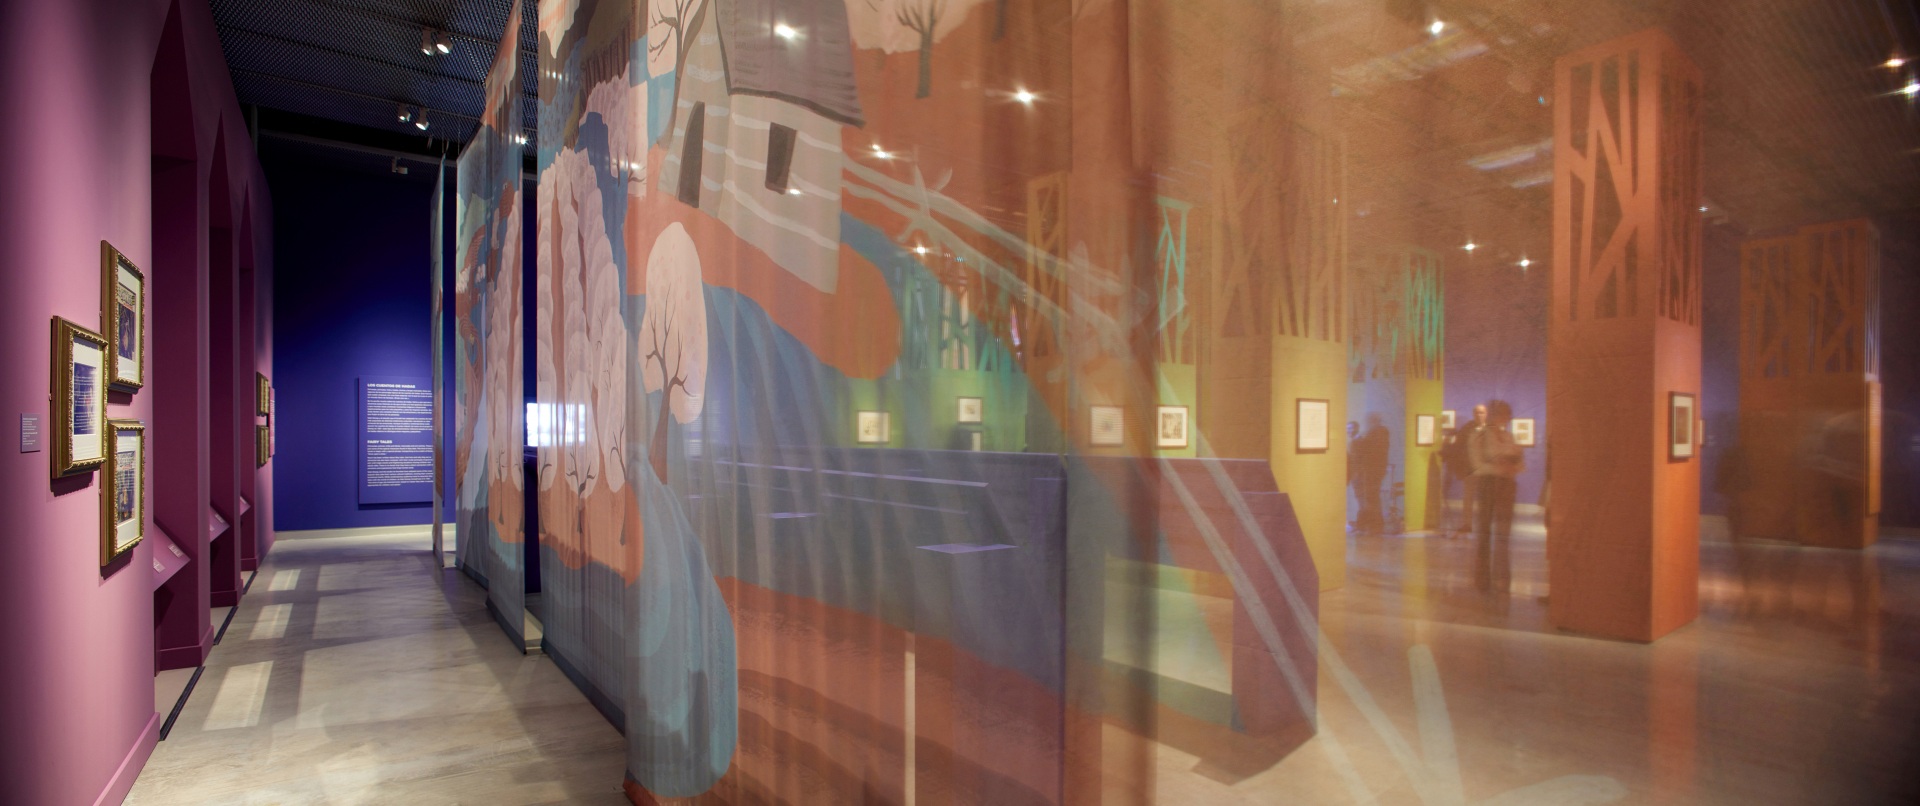 Exposición sobre Walt Disney. Mesas de dibujo color morado. Paisaje de colores. Transparencia y bosque de colores. 